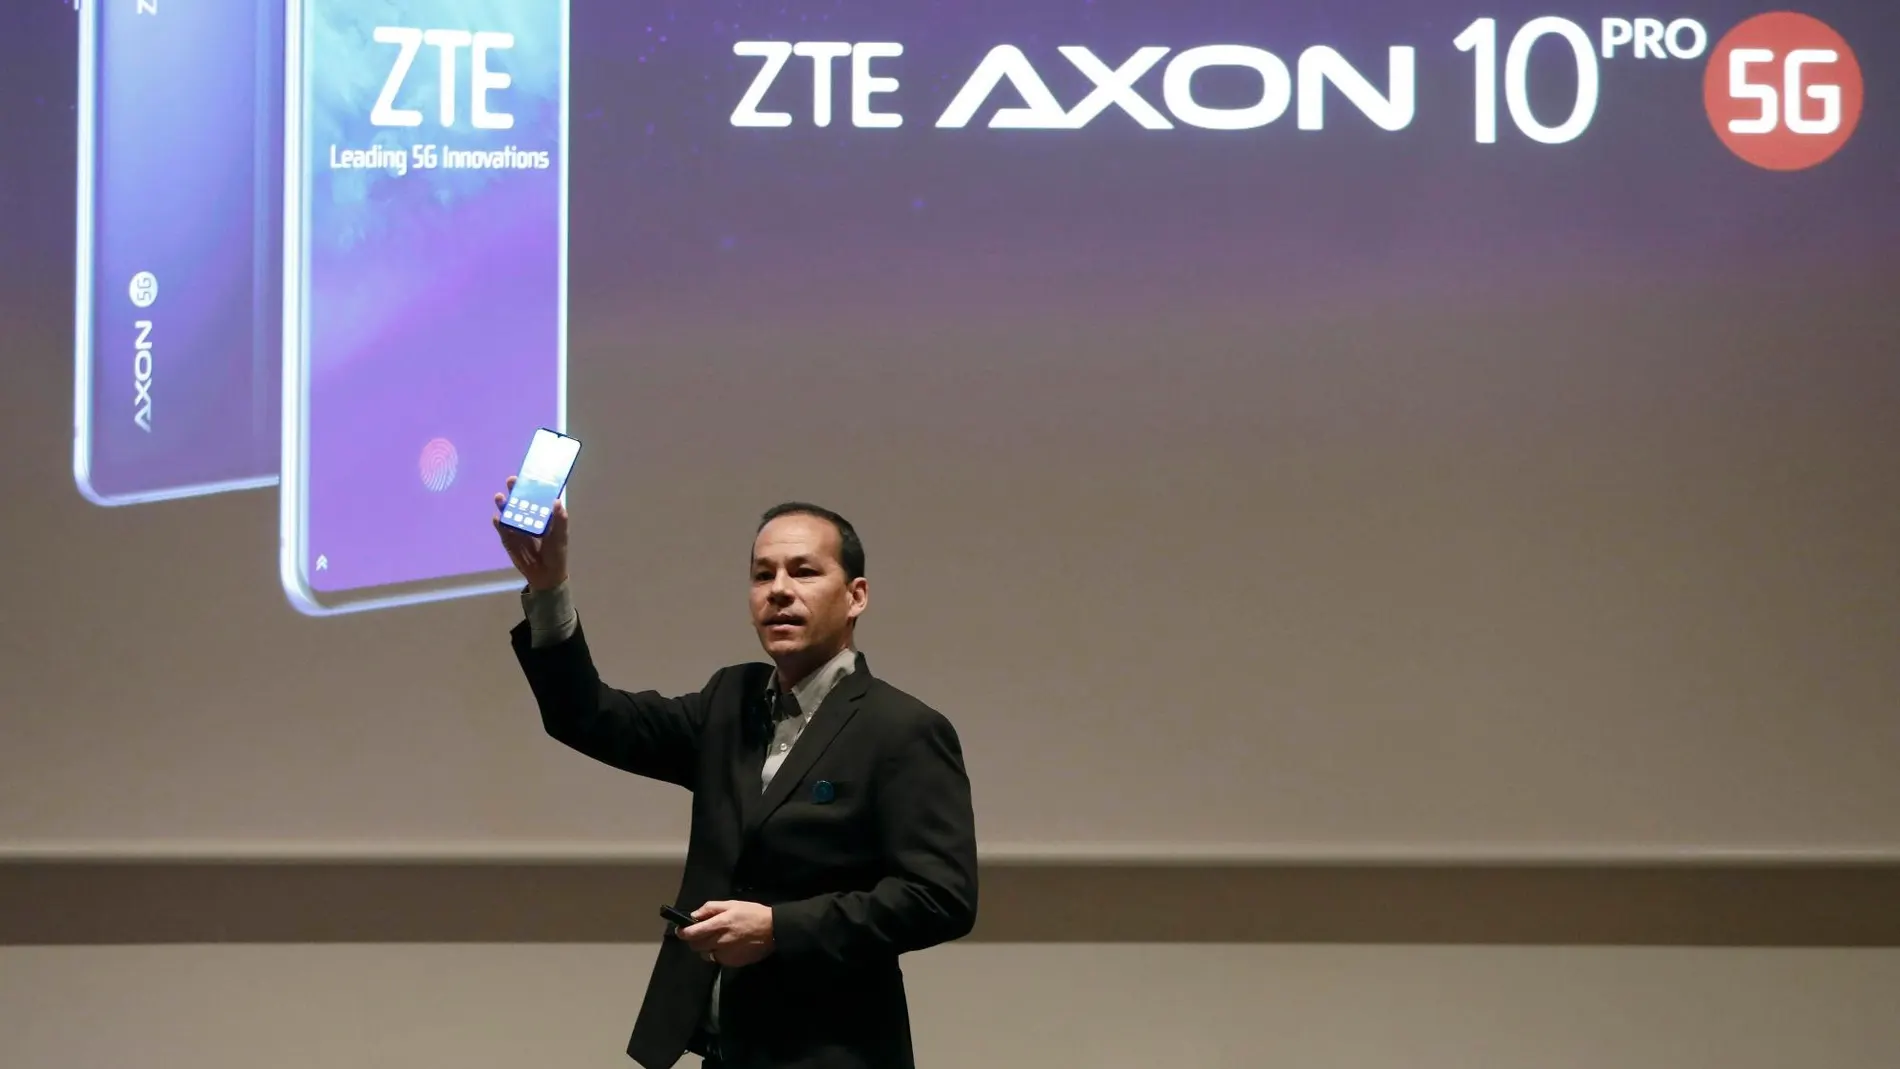 La china ZTE alarga su presencia en 5G con un terminal adaptado a esta tecnología, el Axon 10 Pro 5G, que verá la luz durante el primer semestre del año en China y Europa.